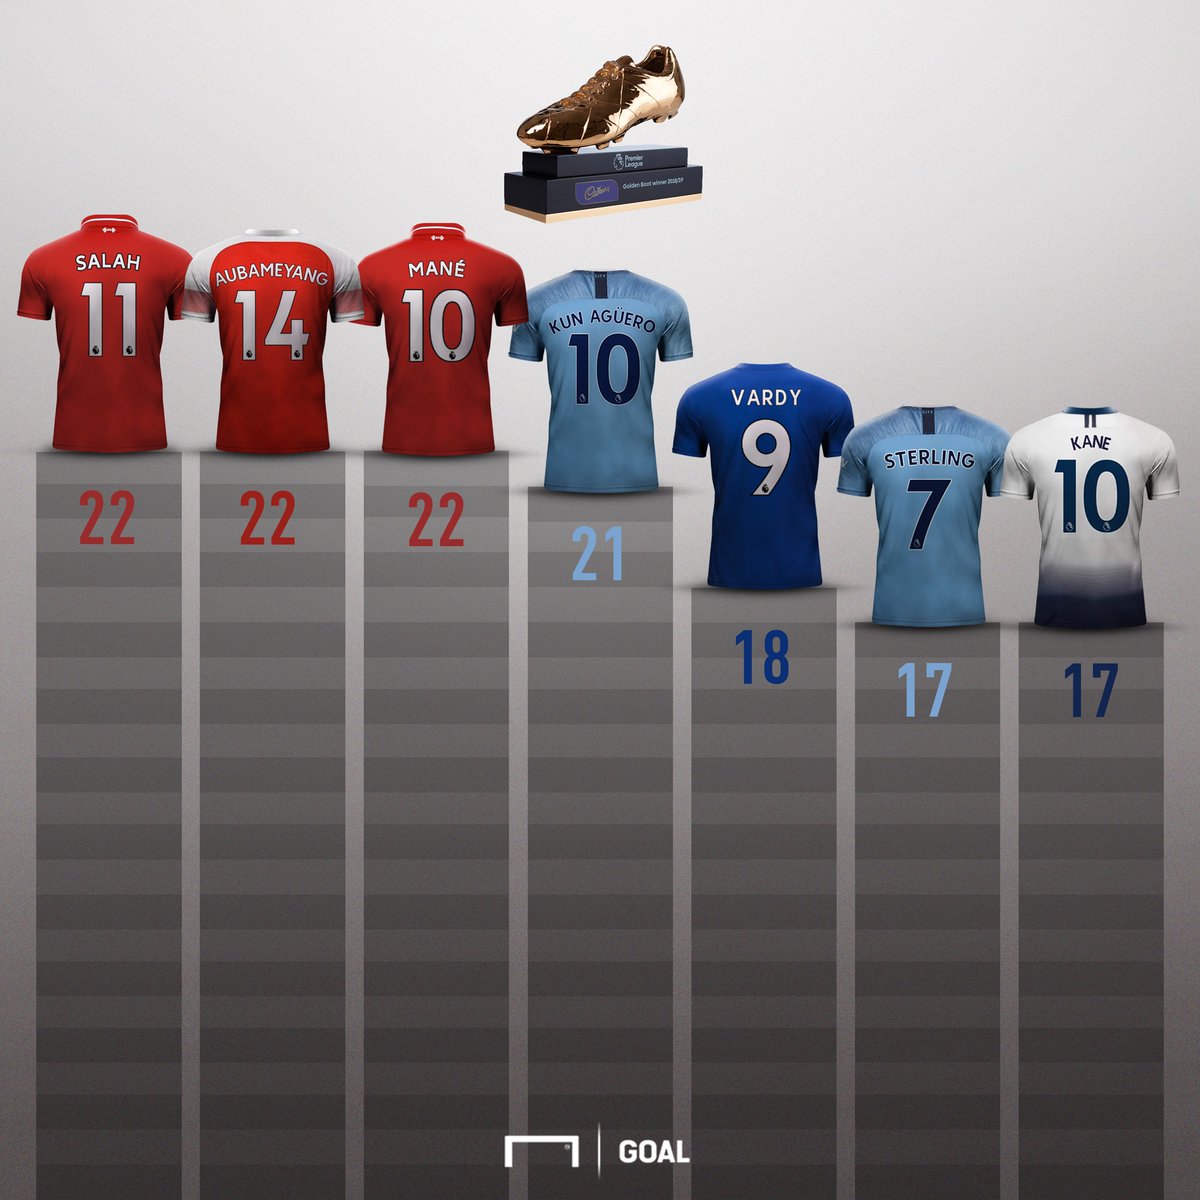 Mohamed Salah, Sadio Mane, Pierre-Emerick Aubameyang, Vua phá lưới, Ngoại hạng Anh, Premier League, chiếc giày vàng, trực tiếp bóng đá, Arsenal, Liverpool